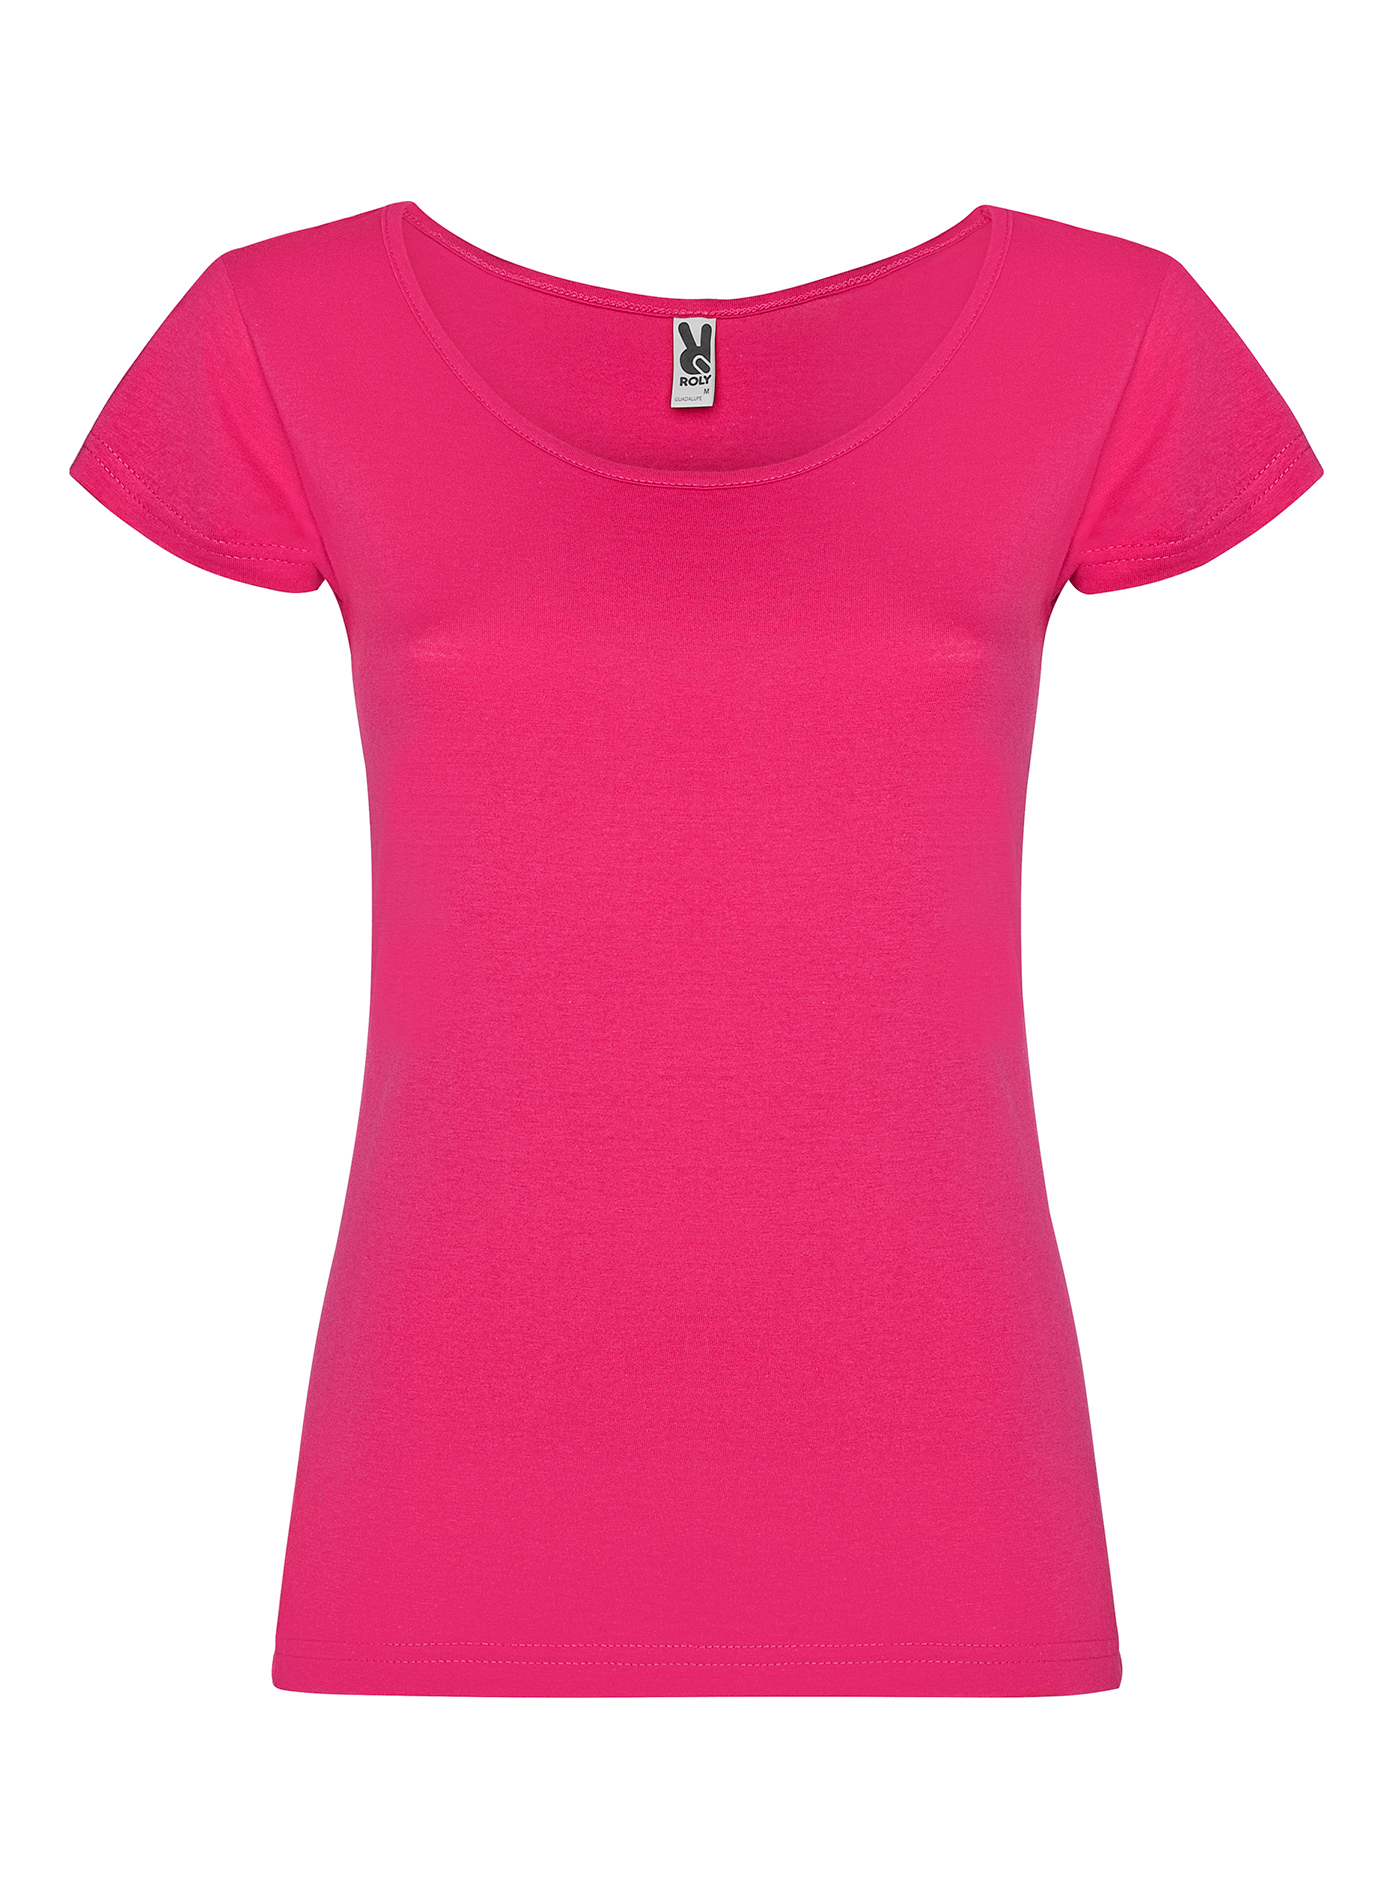 Dámské tričko Roly Guadalupe - Sytě růžová XXL